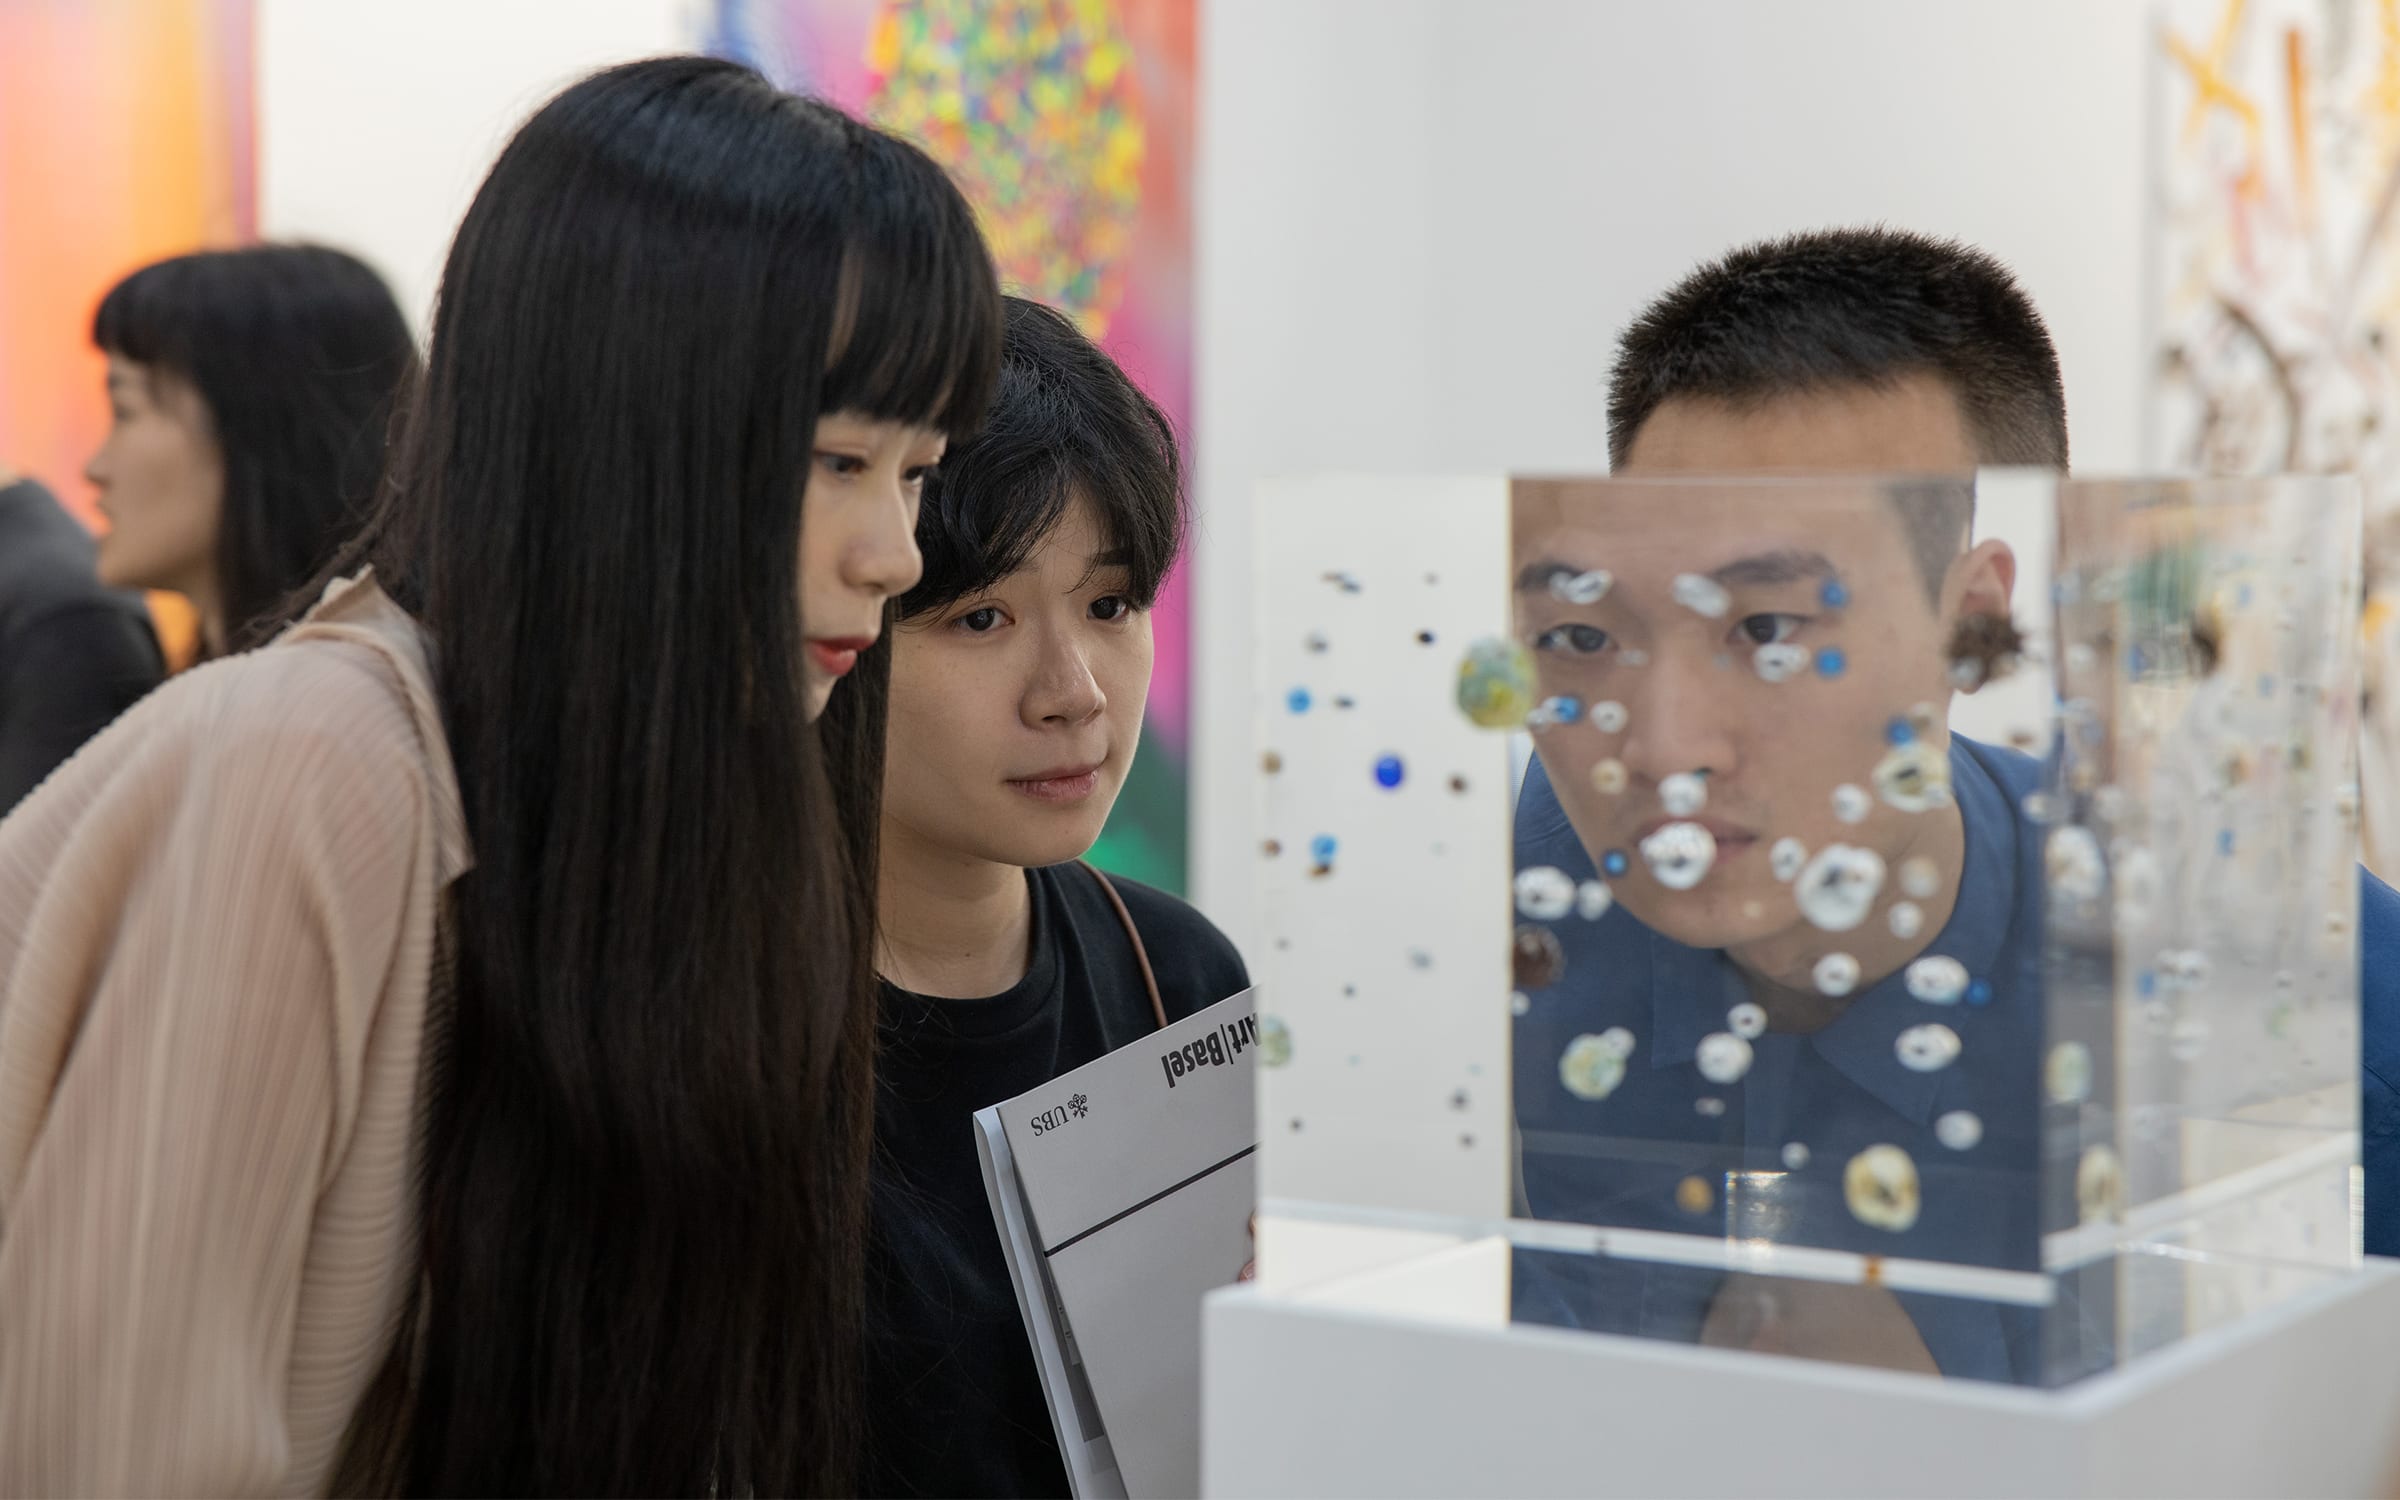 Young visitors taking a closer look at an artwork during Art Basel's 2019 Hong Kong edition.